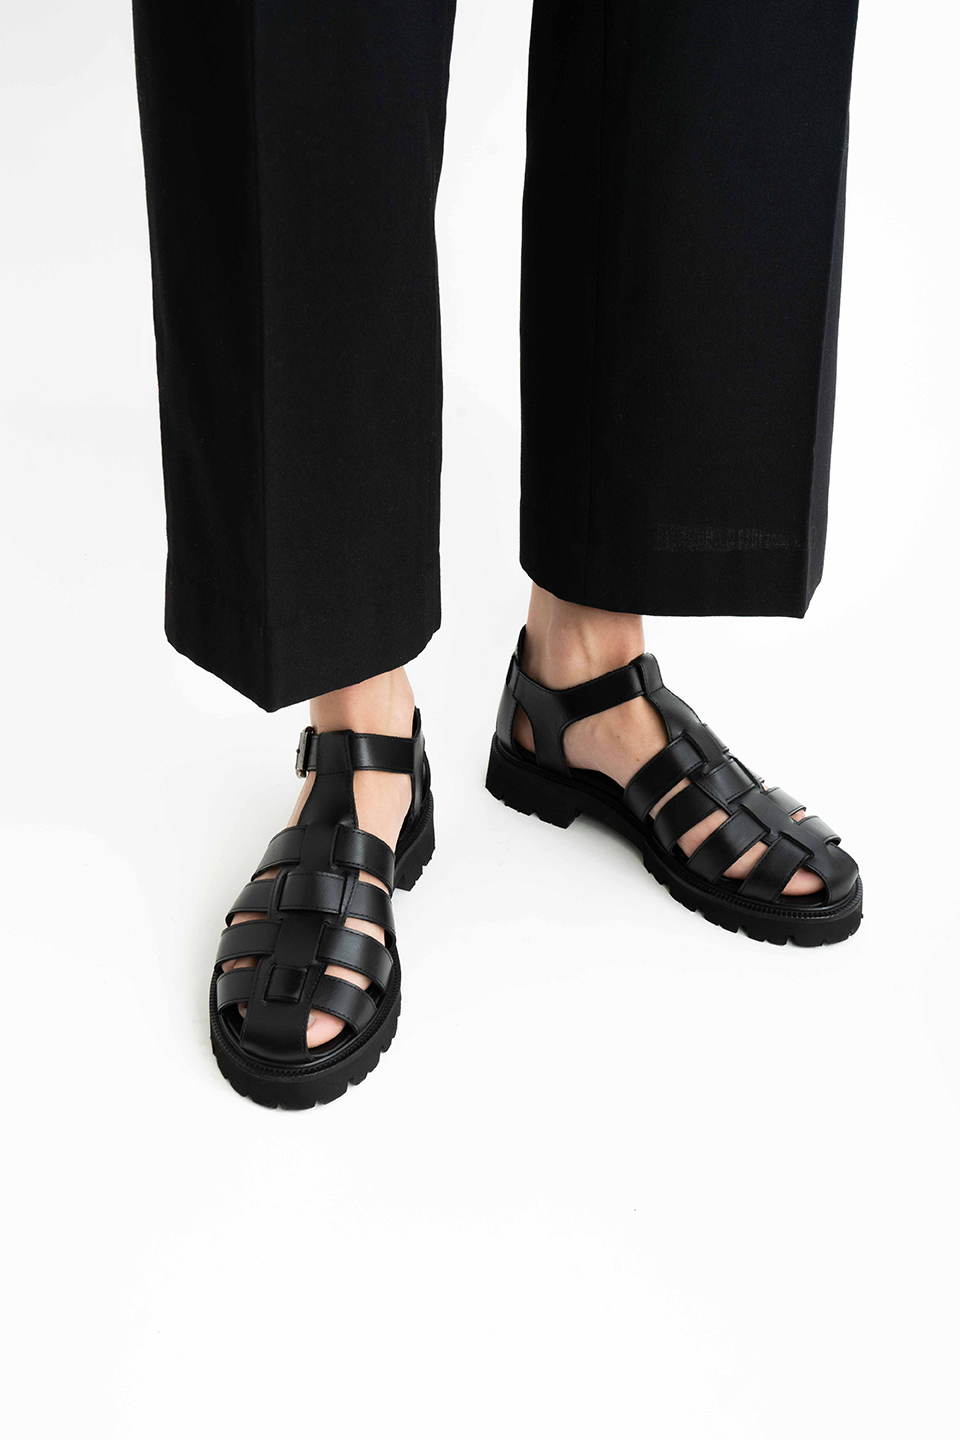 Miuccia sandals, black leather